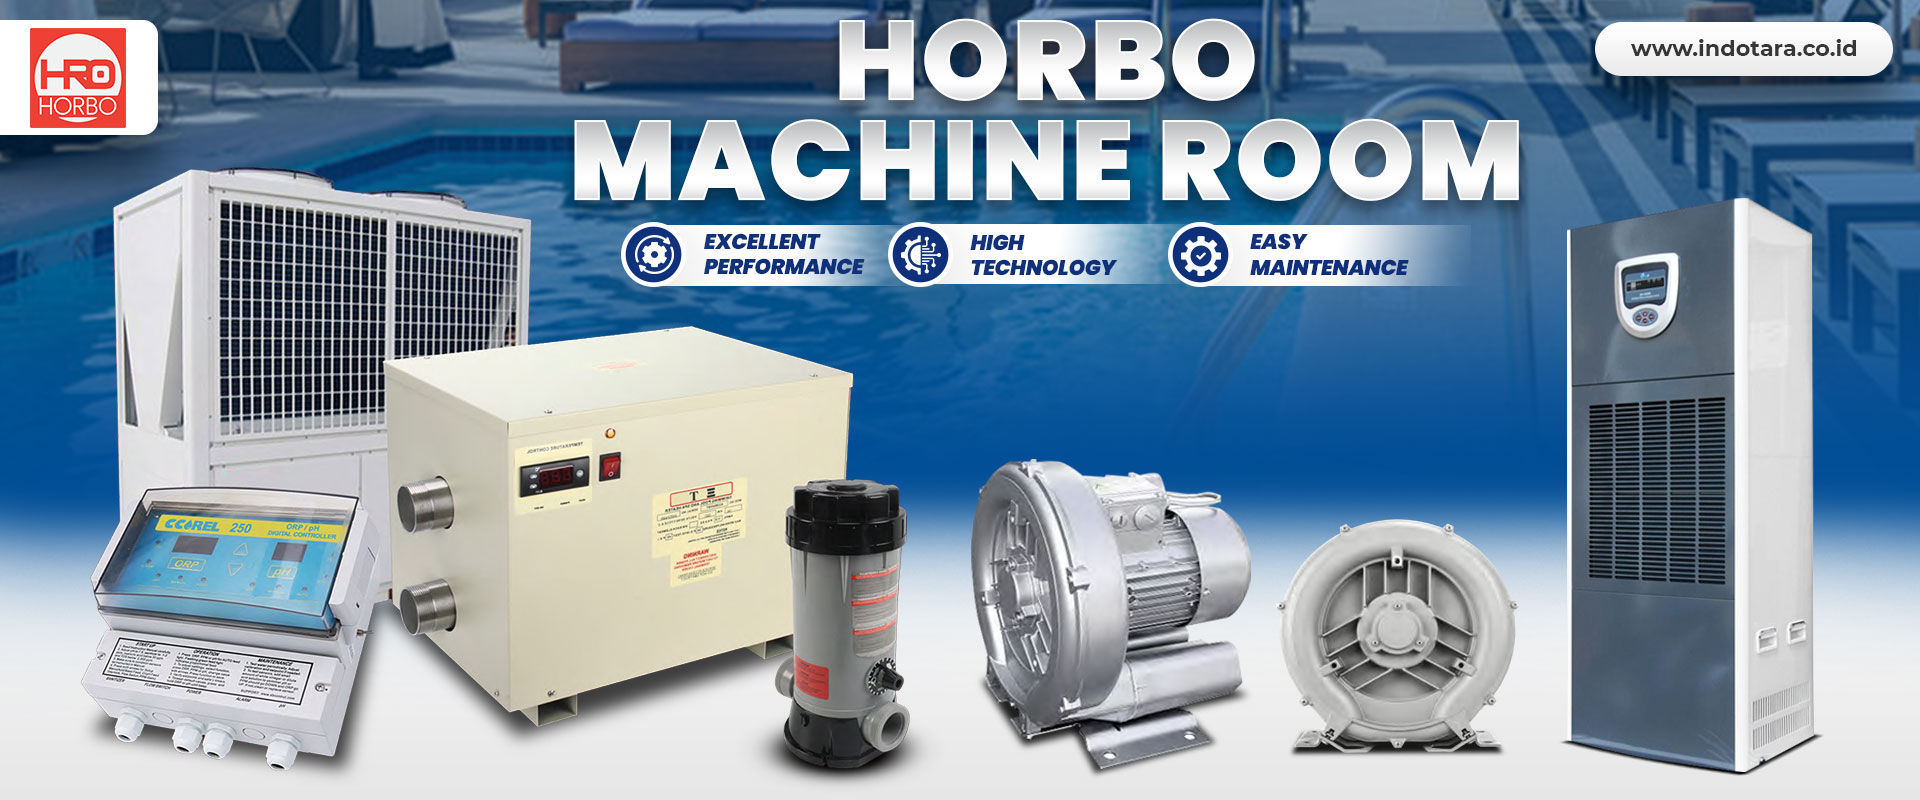 Horbo Machine Room